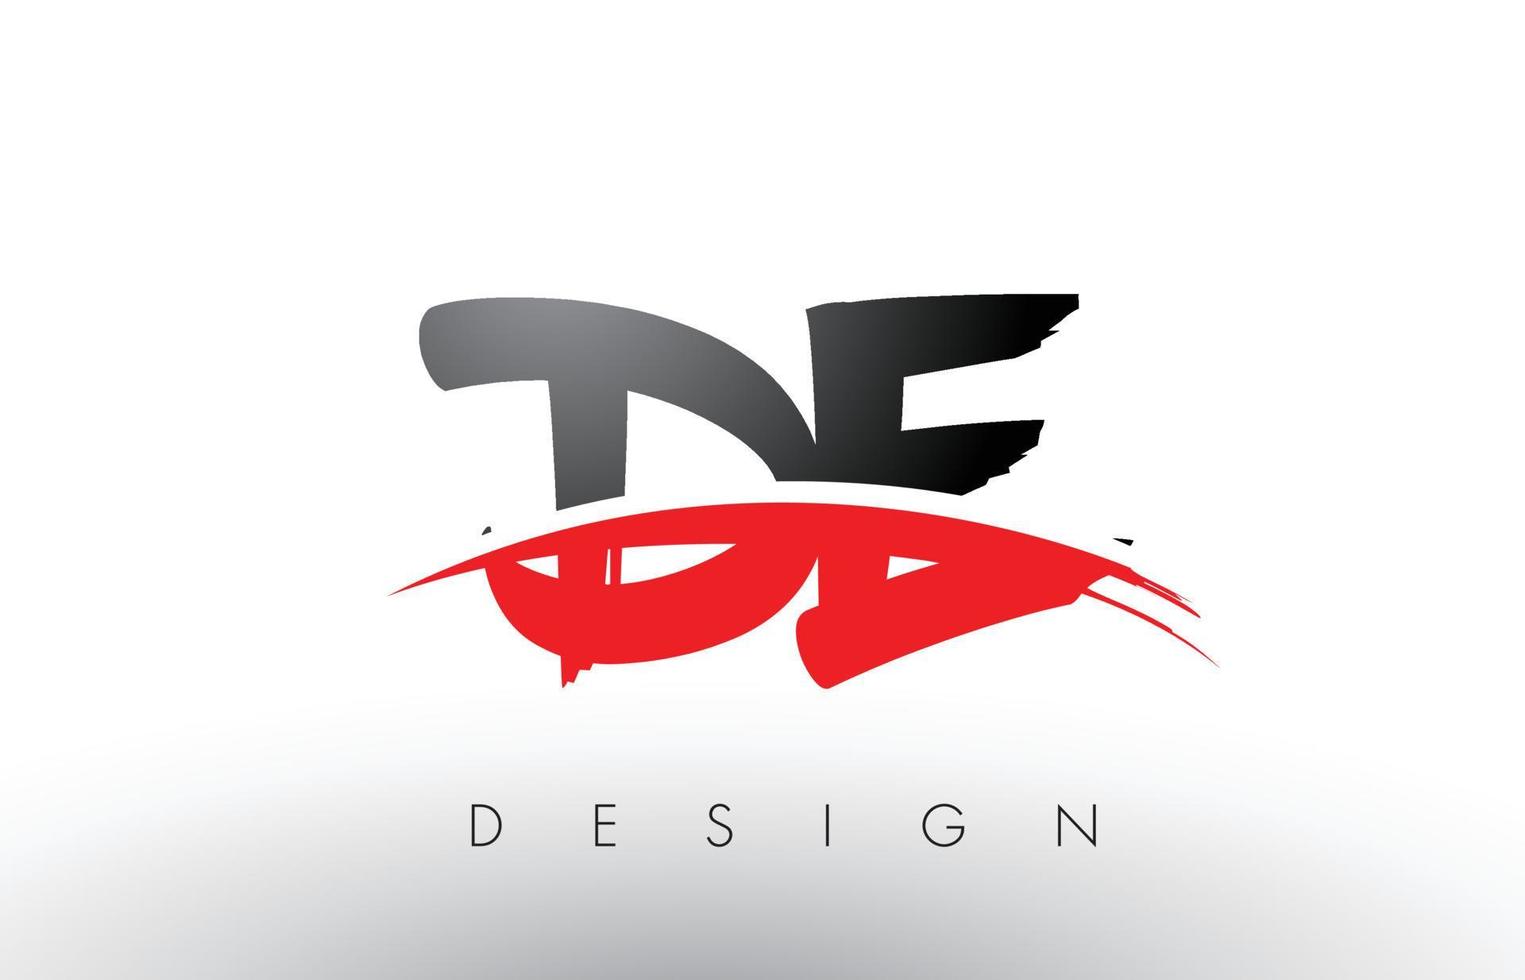 lettere del logo de de brush con swoosh brush frontale rosso e nero vettore